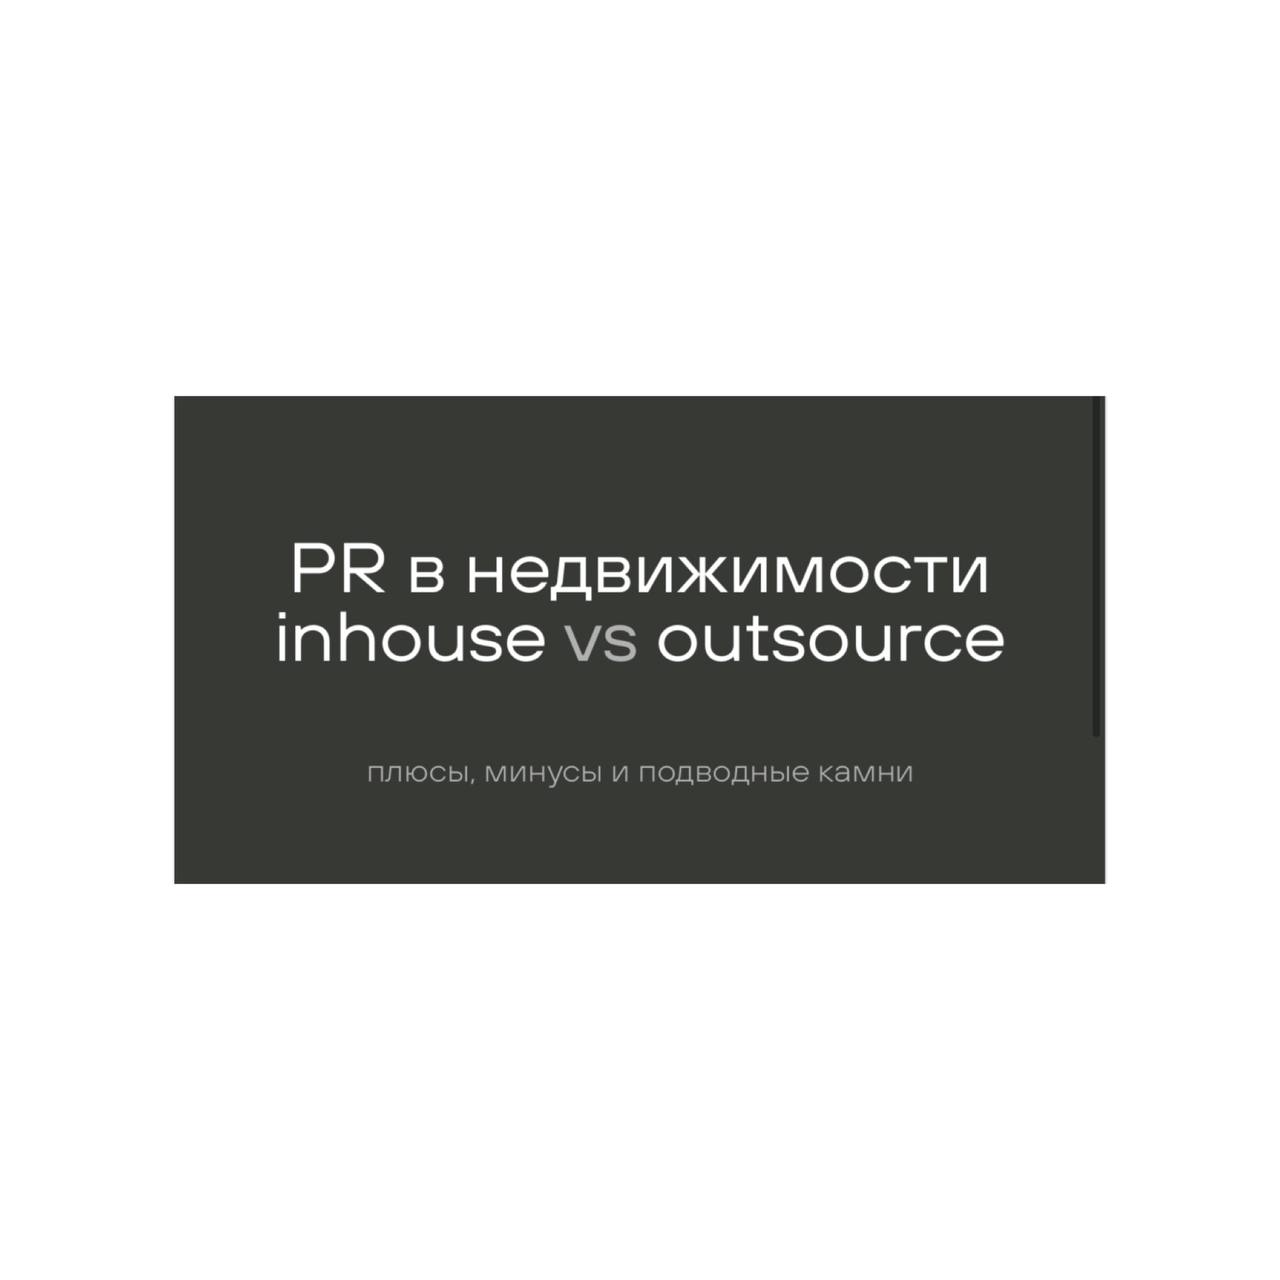 Лекция "PR в недвижимости inhouse vs outsource"